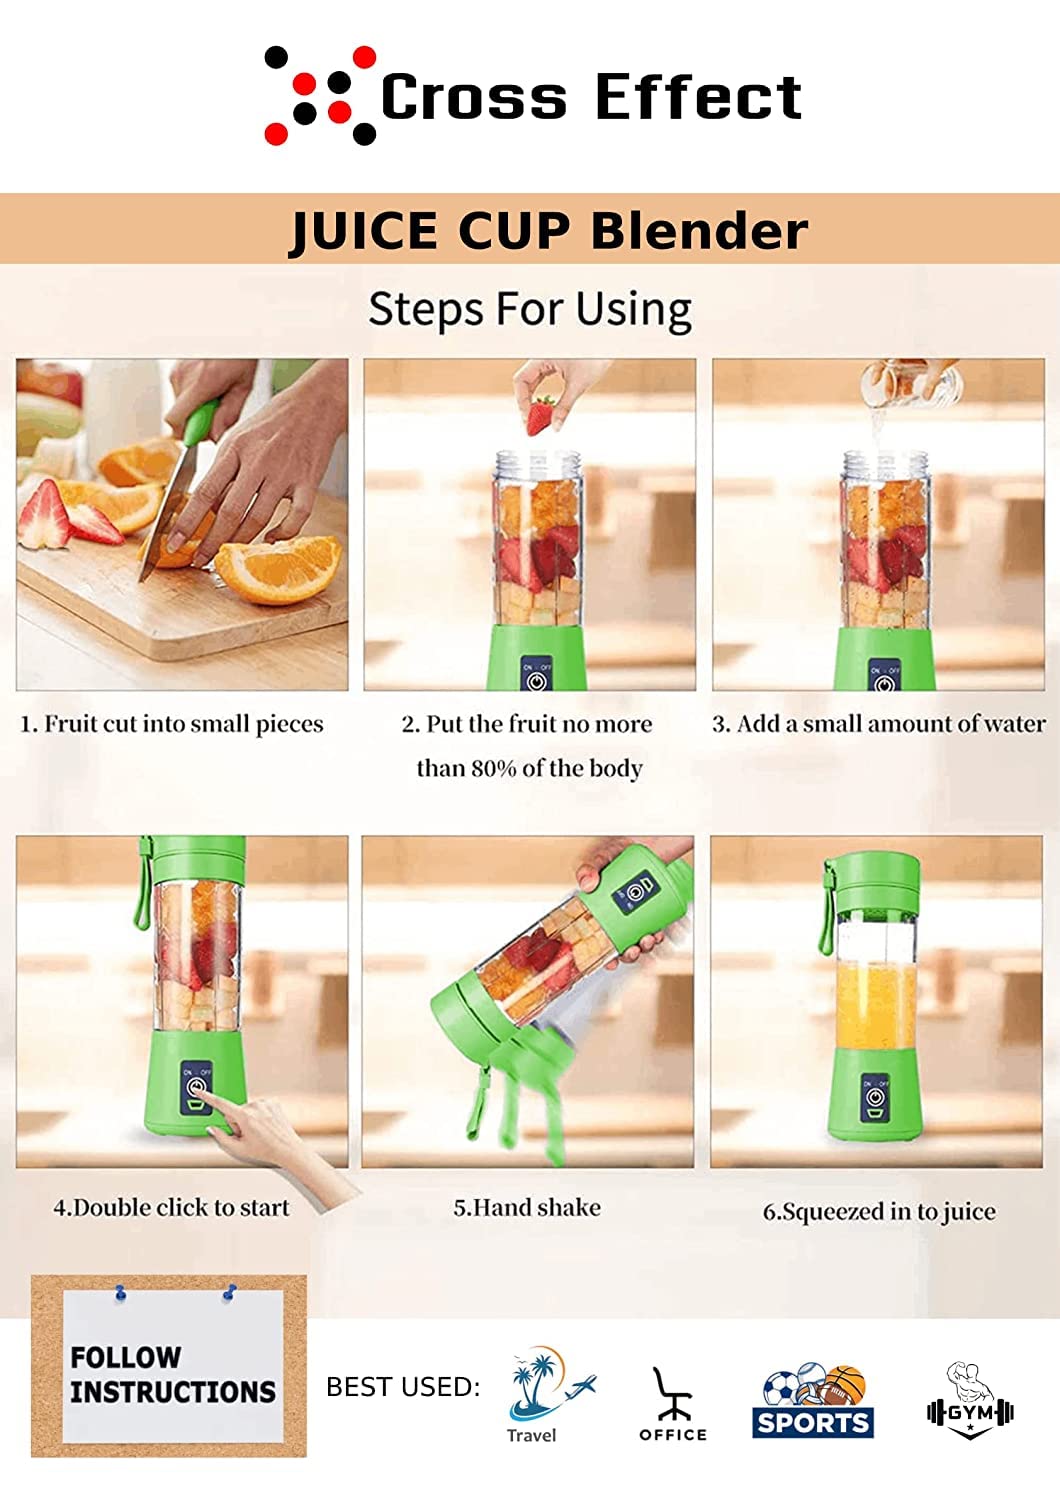 USB Juicer Bottle - Portable Electric USB Juice Maker Juicer Bottle Blender Grinder Mixer,6 Blades Rechargeable Bottle, Shake, Smoothies, Fruit Juicer for Fruits, Juice Maker Machine